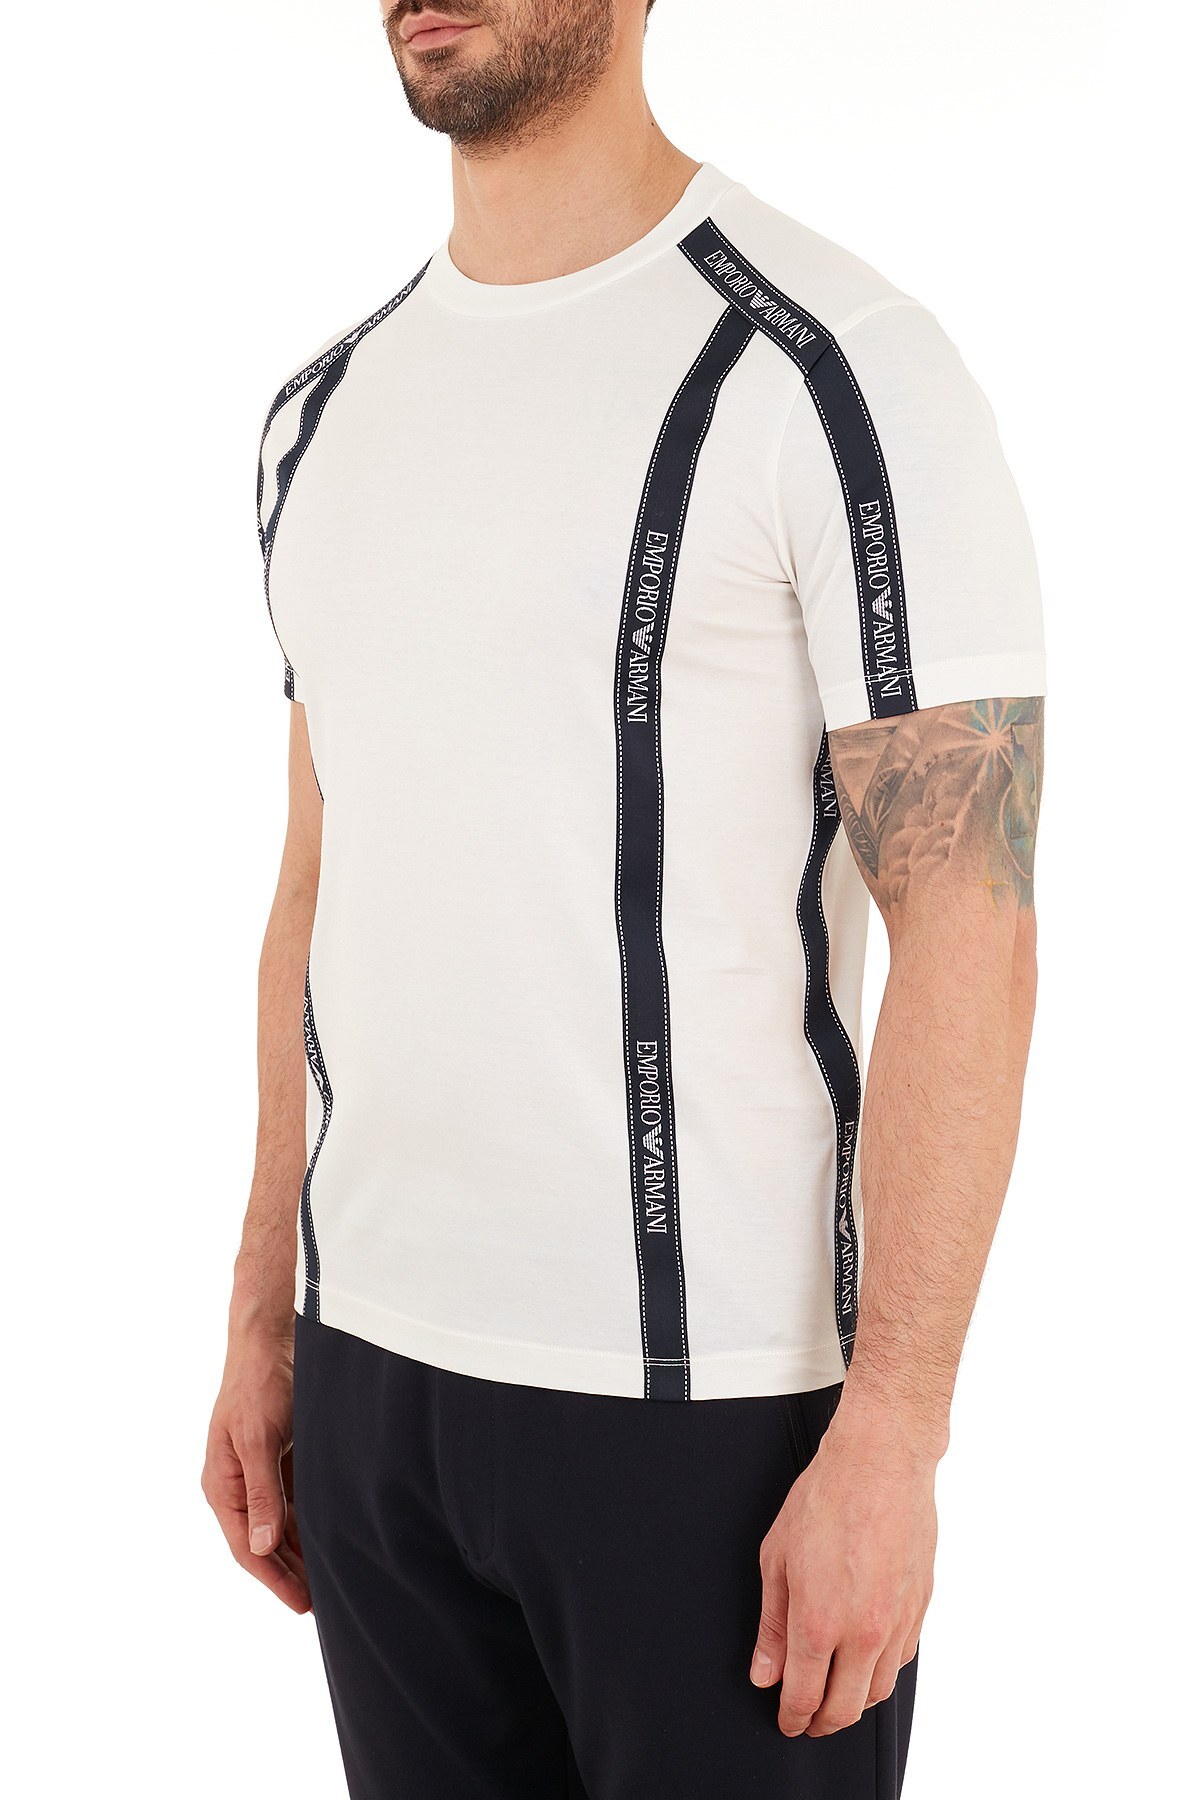 Emporio Armani Logo Bantlı Bisiklet Yaka % 100 Pamuk Erkek T Shirt S 6H1TG4 1JTUZ 0101 BEYAZ